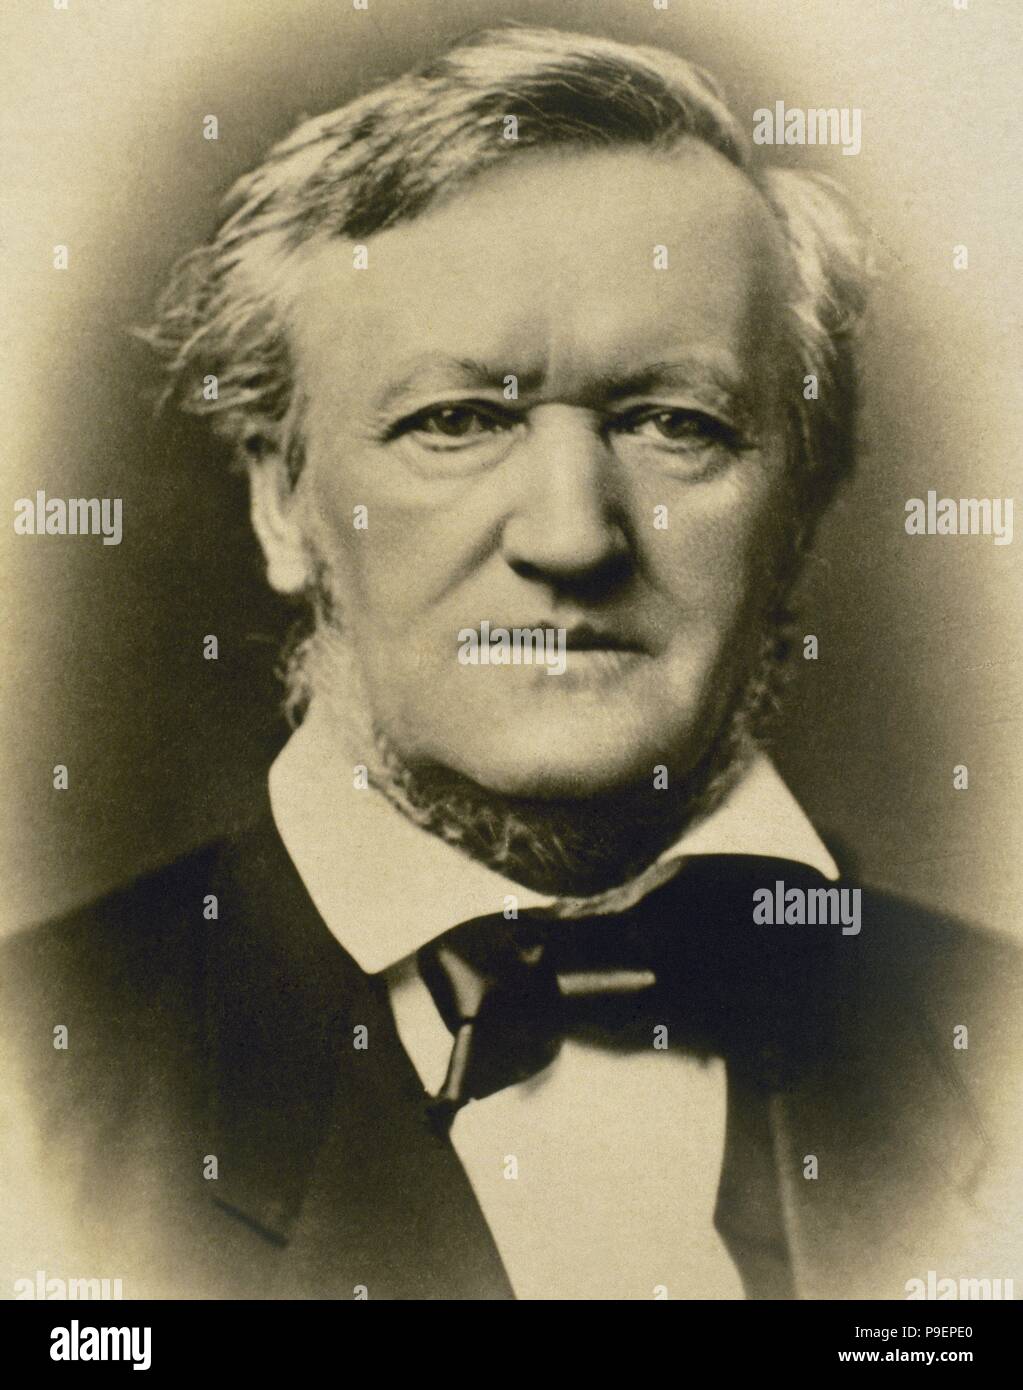 Richard Wagner (1813-1883). Deutscher Komponist. Porträt. Fotografie. Stockfoto